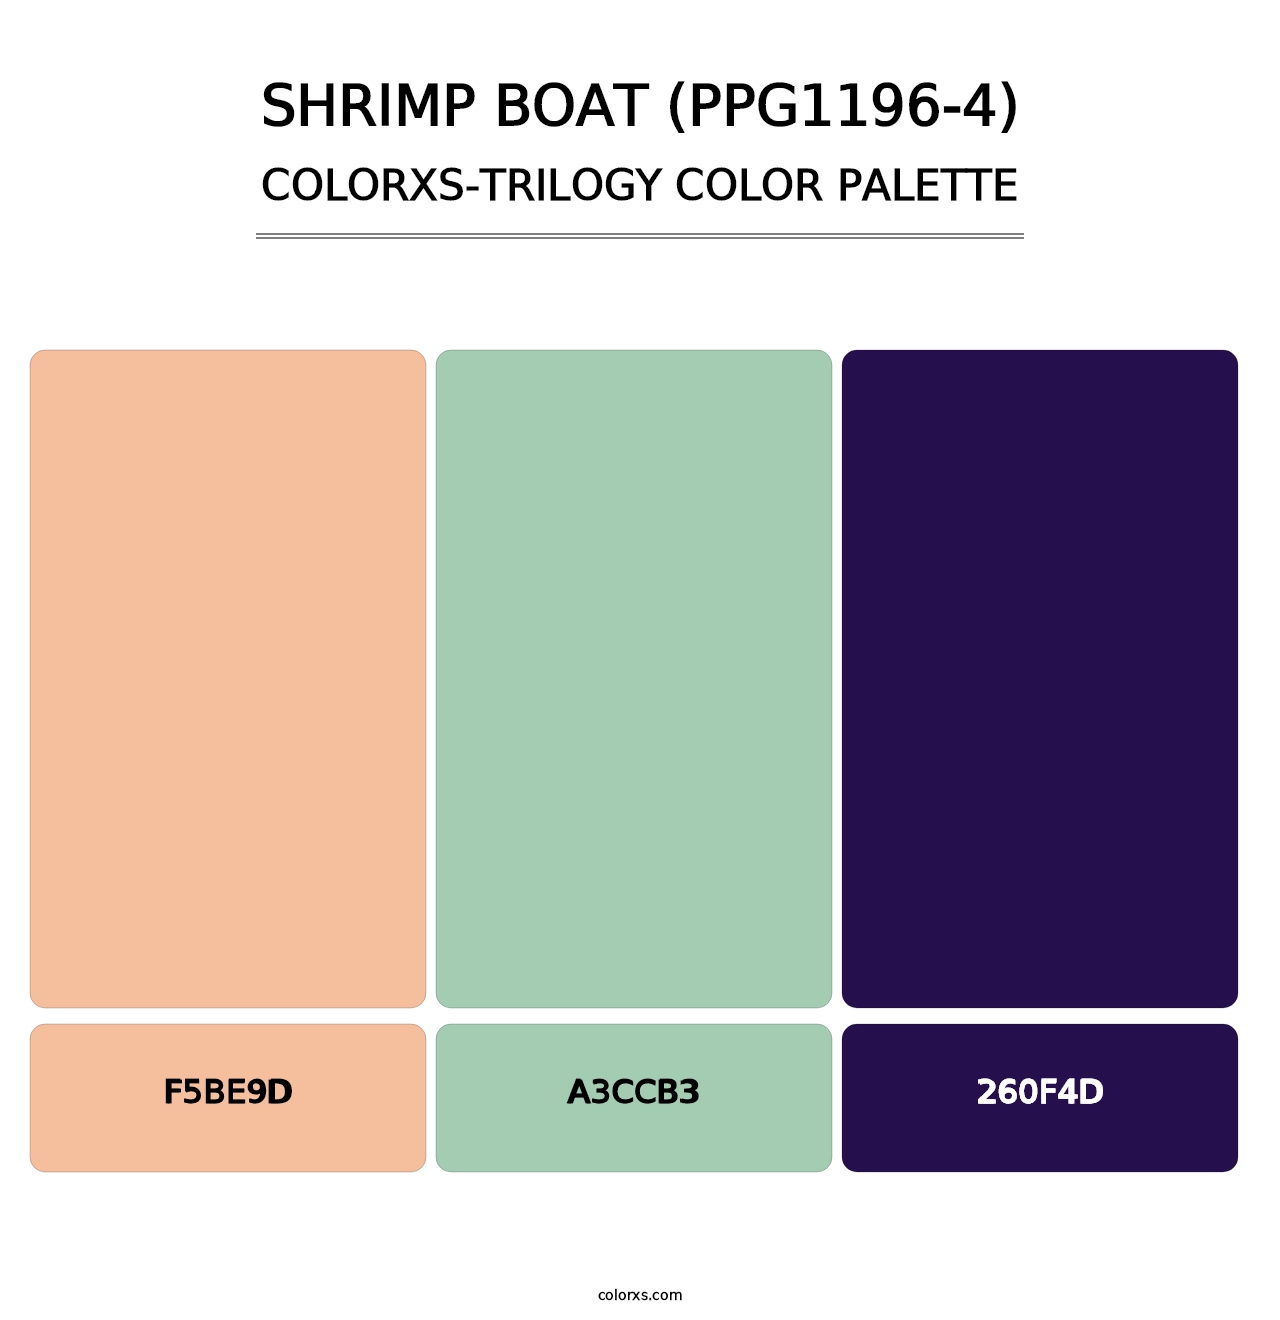 Shrimp Boat (PPG1196-4) - Colorxs Trilogy Palette